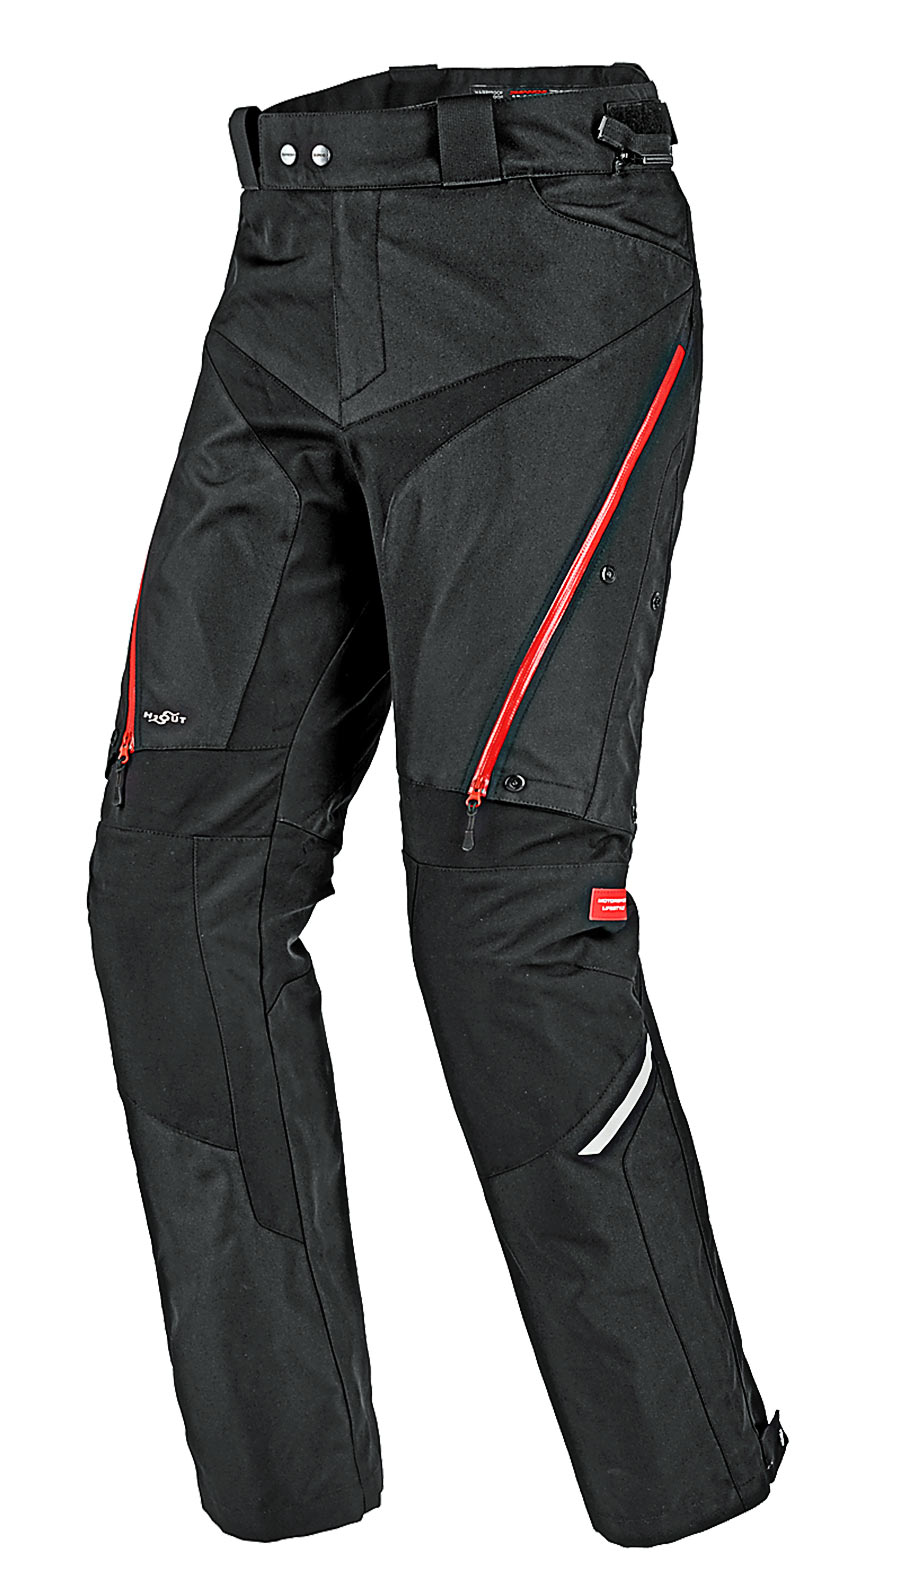 ROCKBROS Cycling Suits Winter Thermal Fleece Jacket Pants Rainproof  Windproof Reflective Riding Jerseys Men Women Sportswear